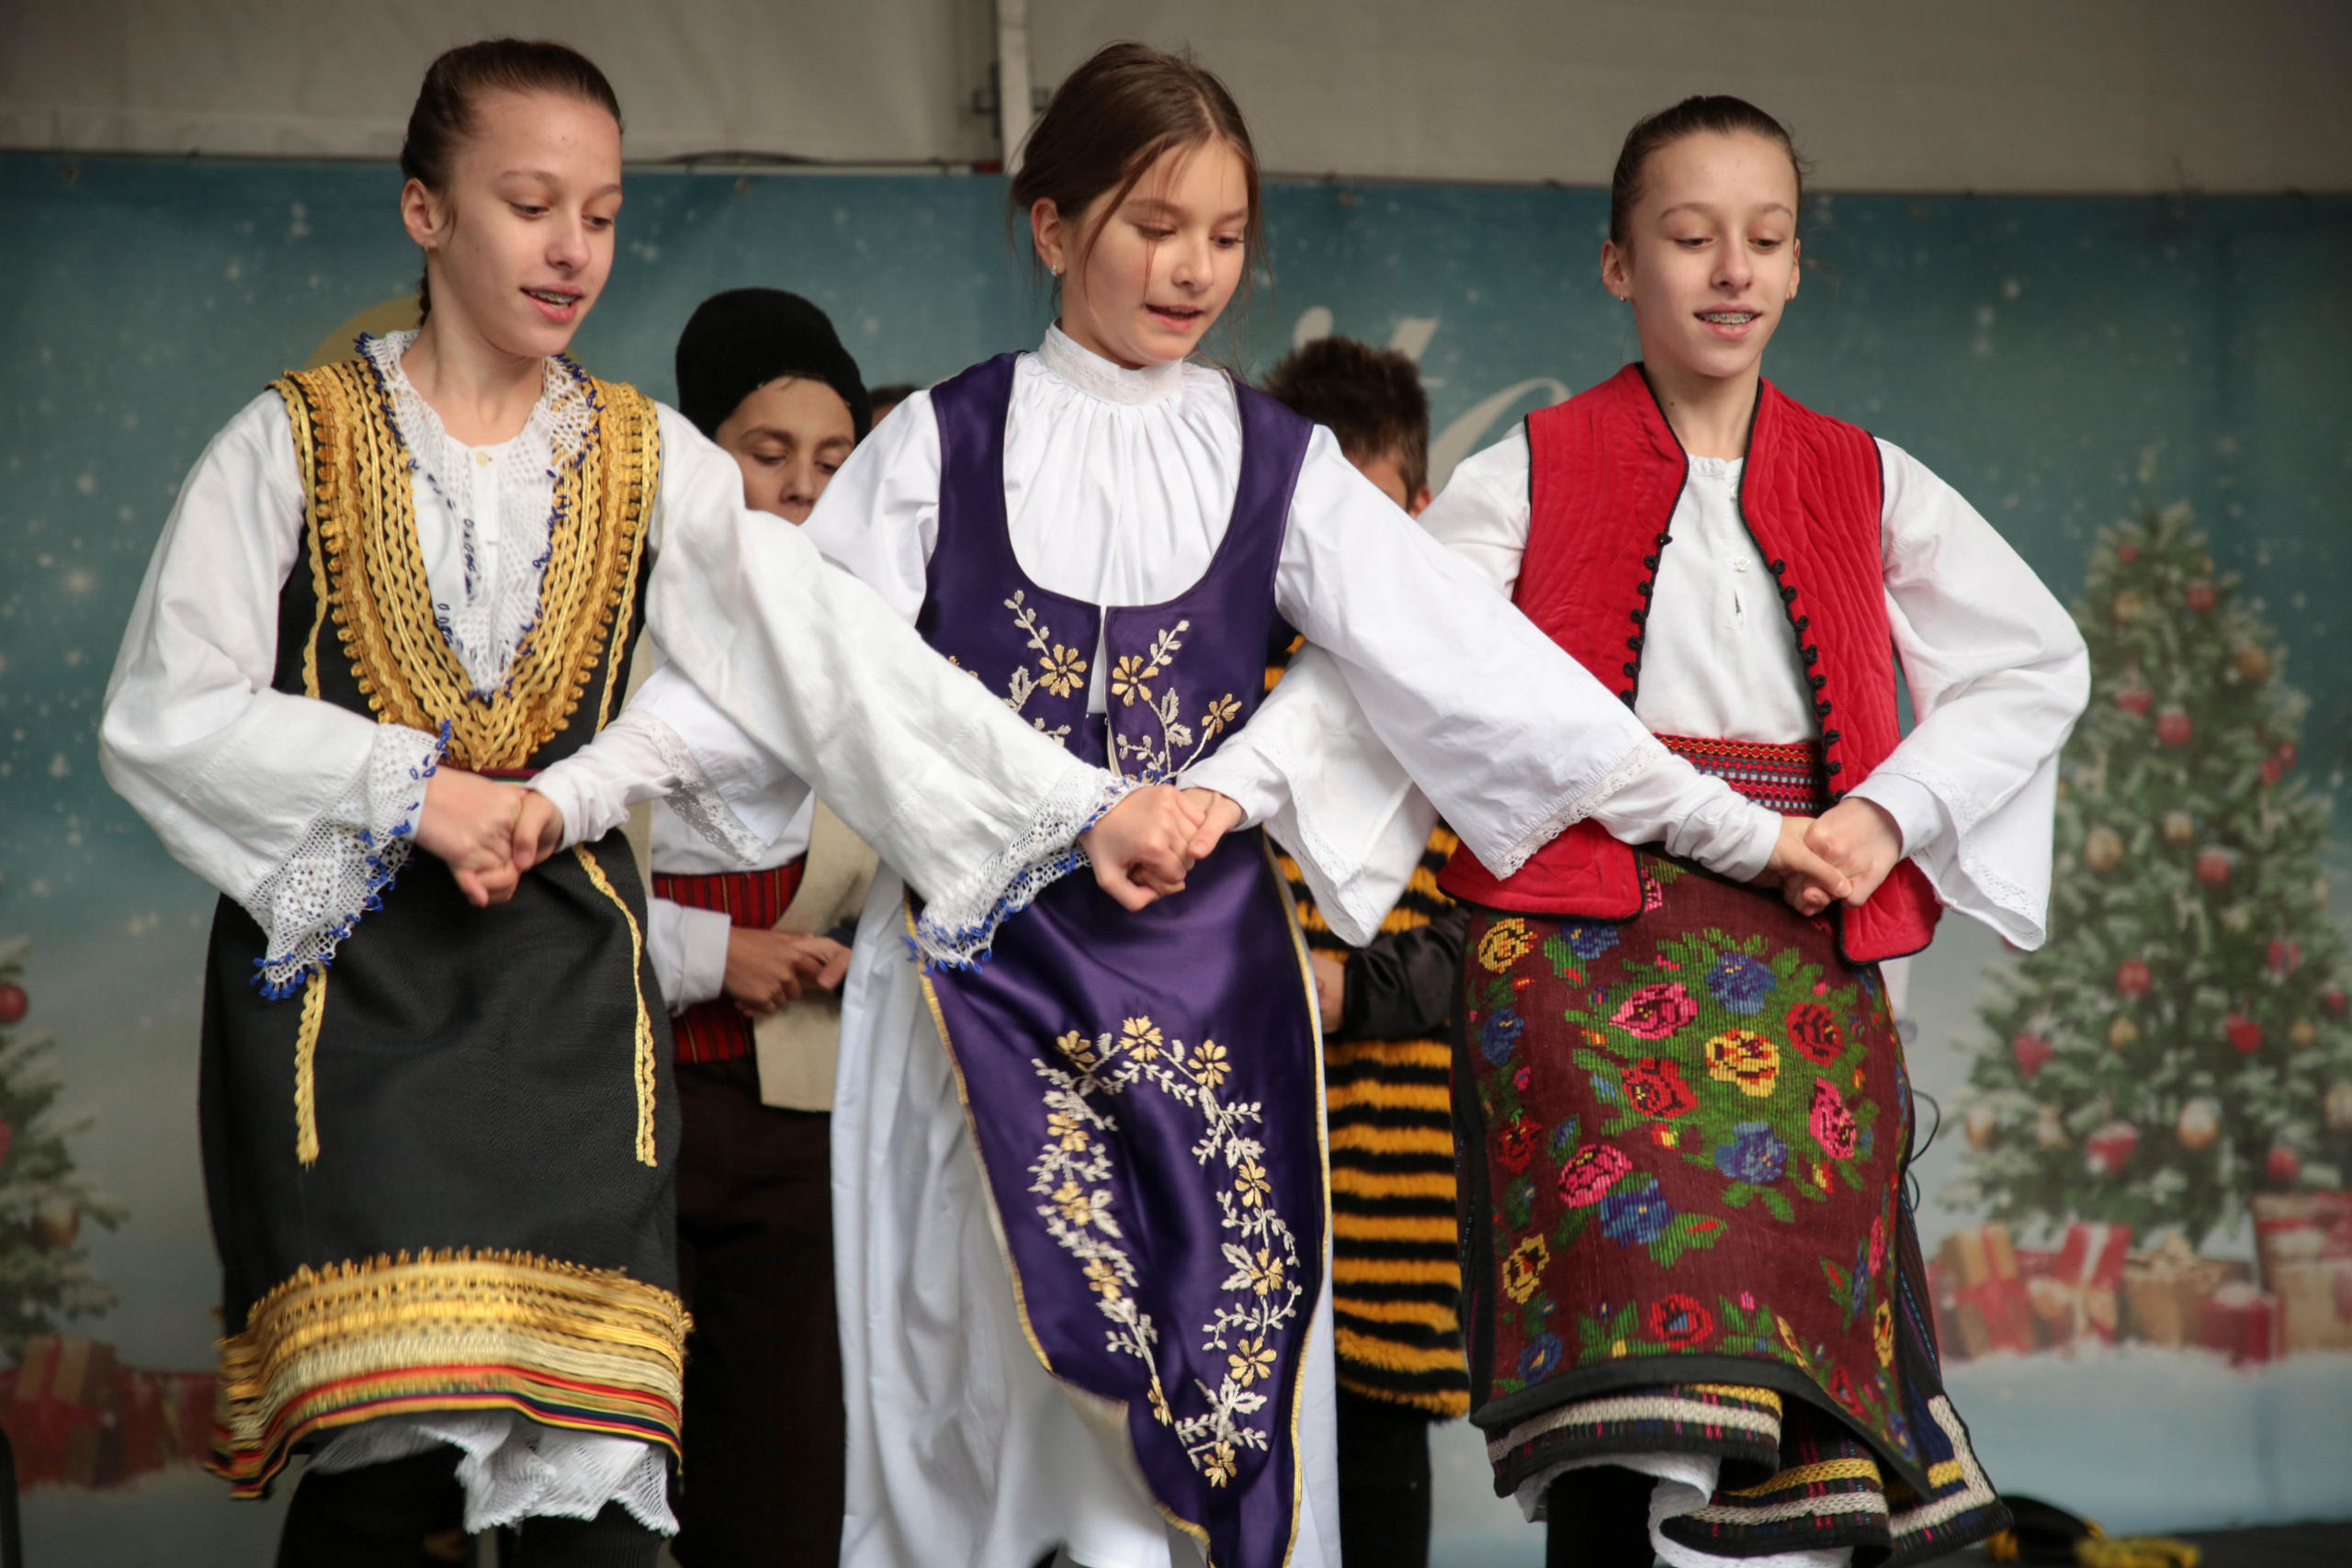 Serb girls dancing